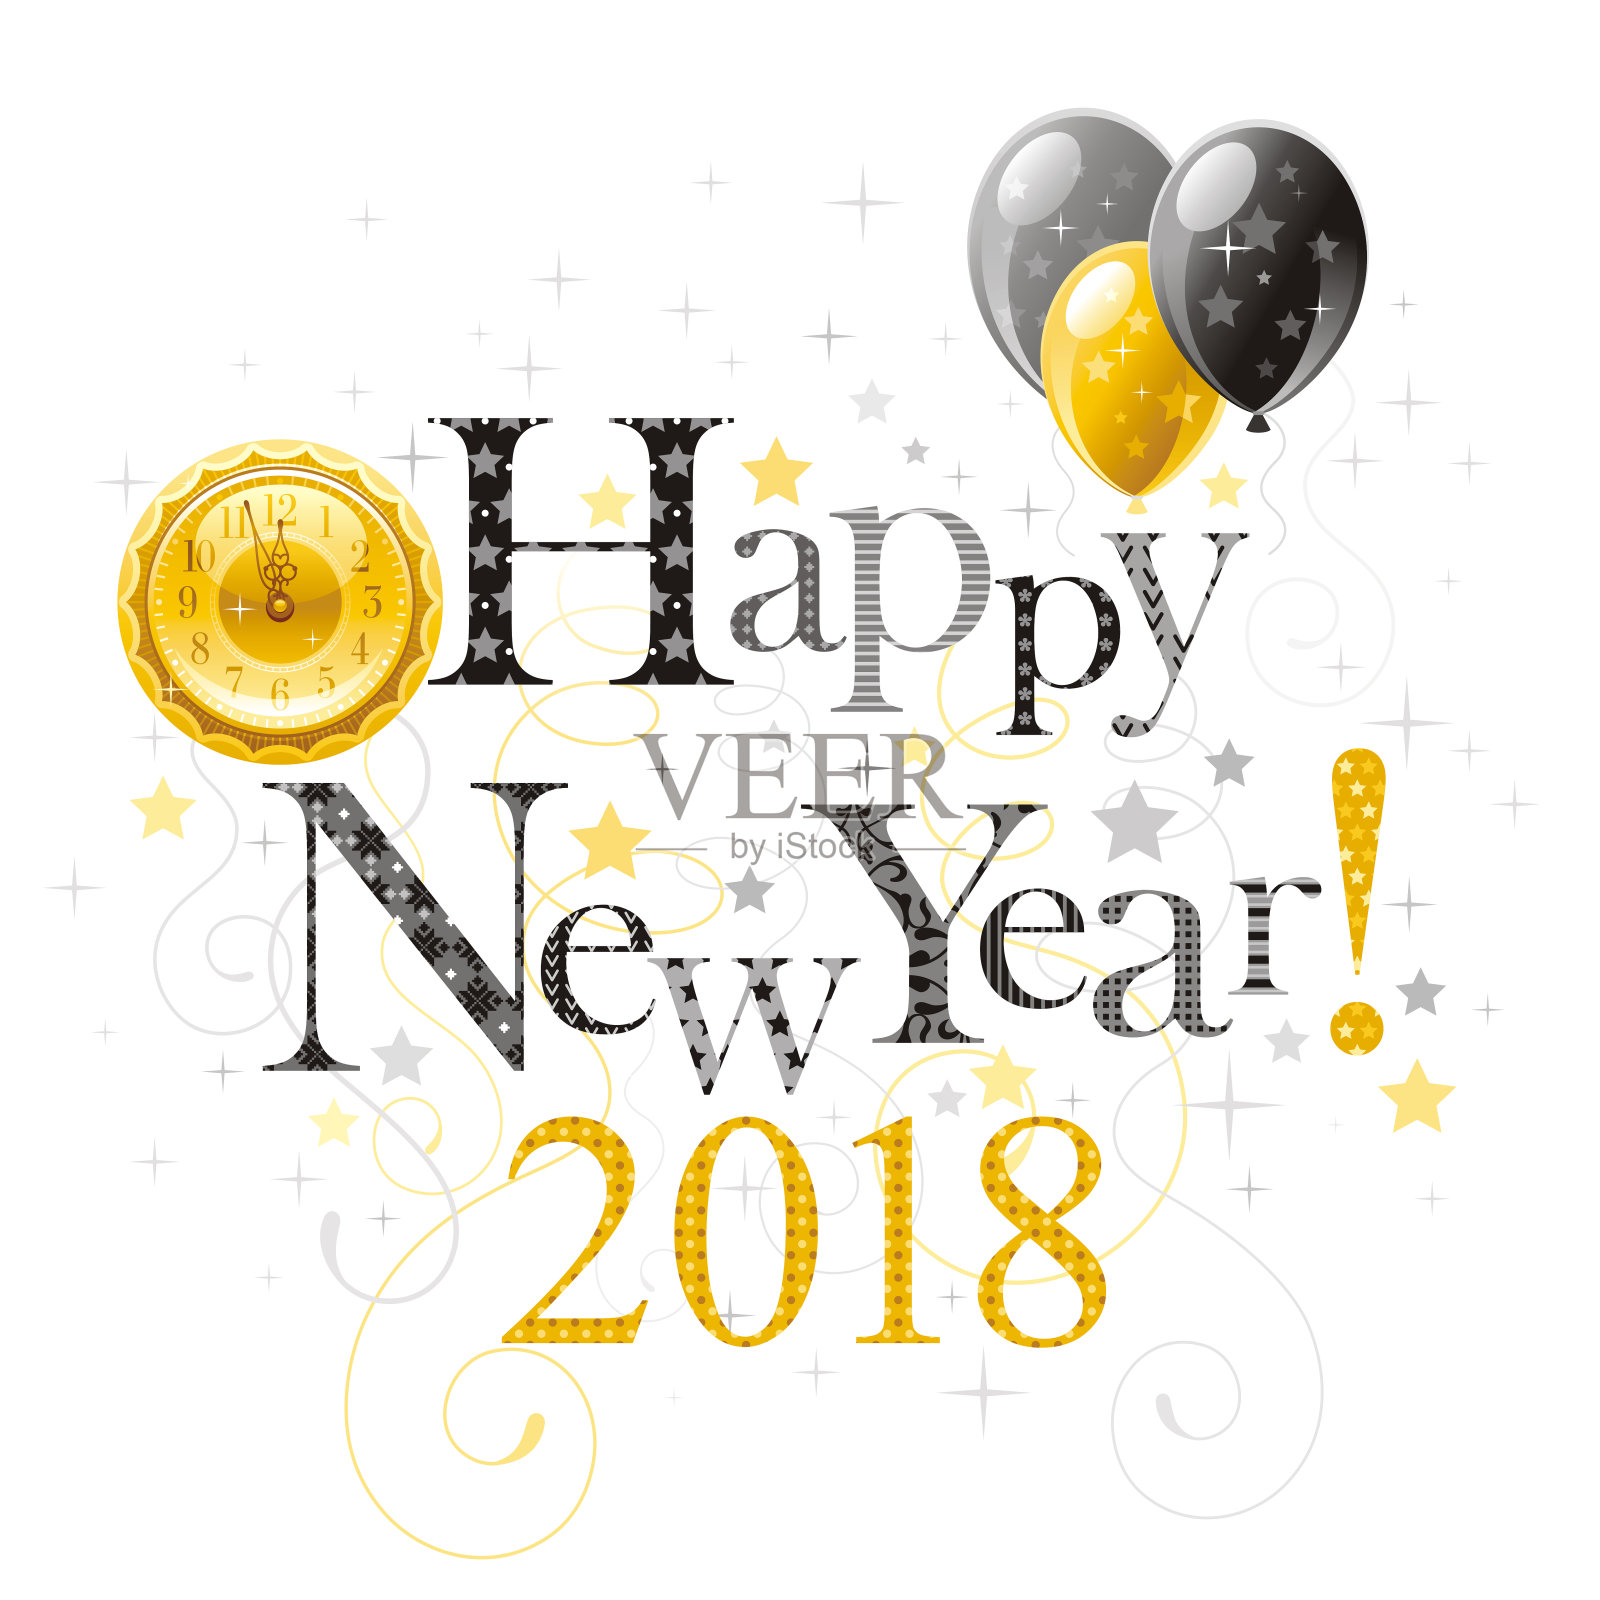 2018年新年快乐。带有时钟和气球的矢量海报。抽象节日设计模板。复古符号图案，文字文字横幅。银色的金黄色。在白色背景上隔离设计模板素材